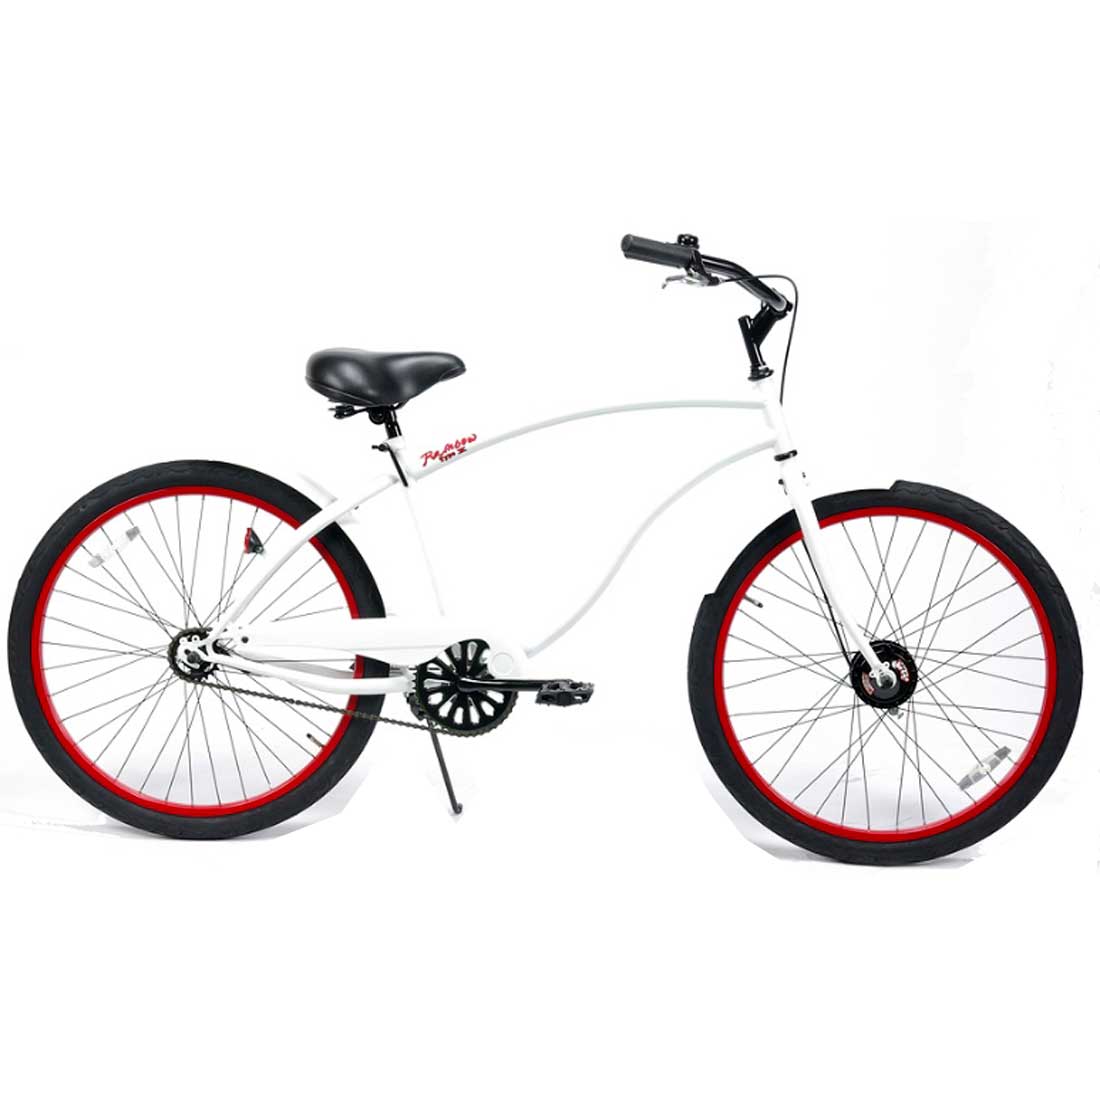 自転車は店舗 鵠沼海岸店 受取で送料無料 自転車 RAINBOW TYPE-X 26CRUISER GlossWhite×RedRim メンズ 通勤 レインボー レディース 通学 限定価格セール！ おしゃれ 61％以上節約 ビーチクルーザー 26インチ